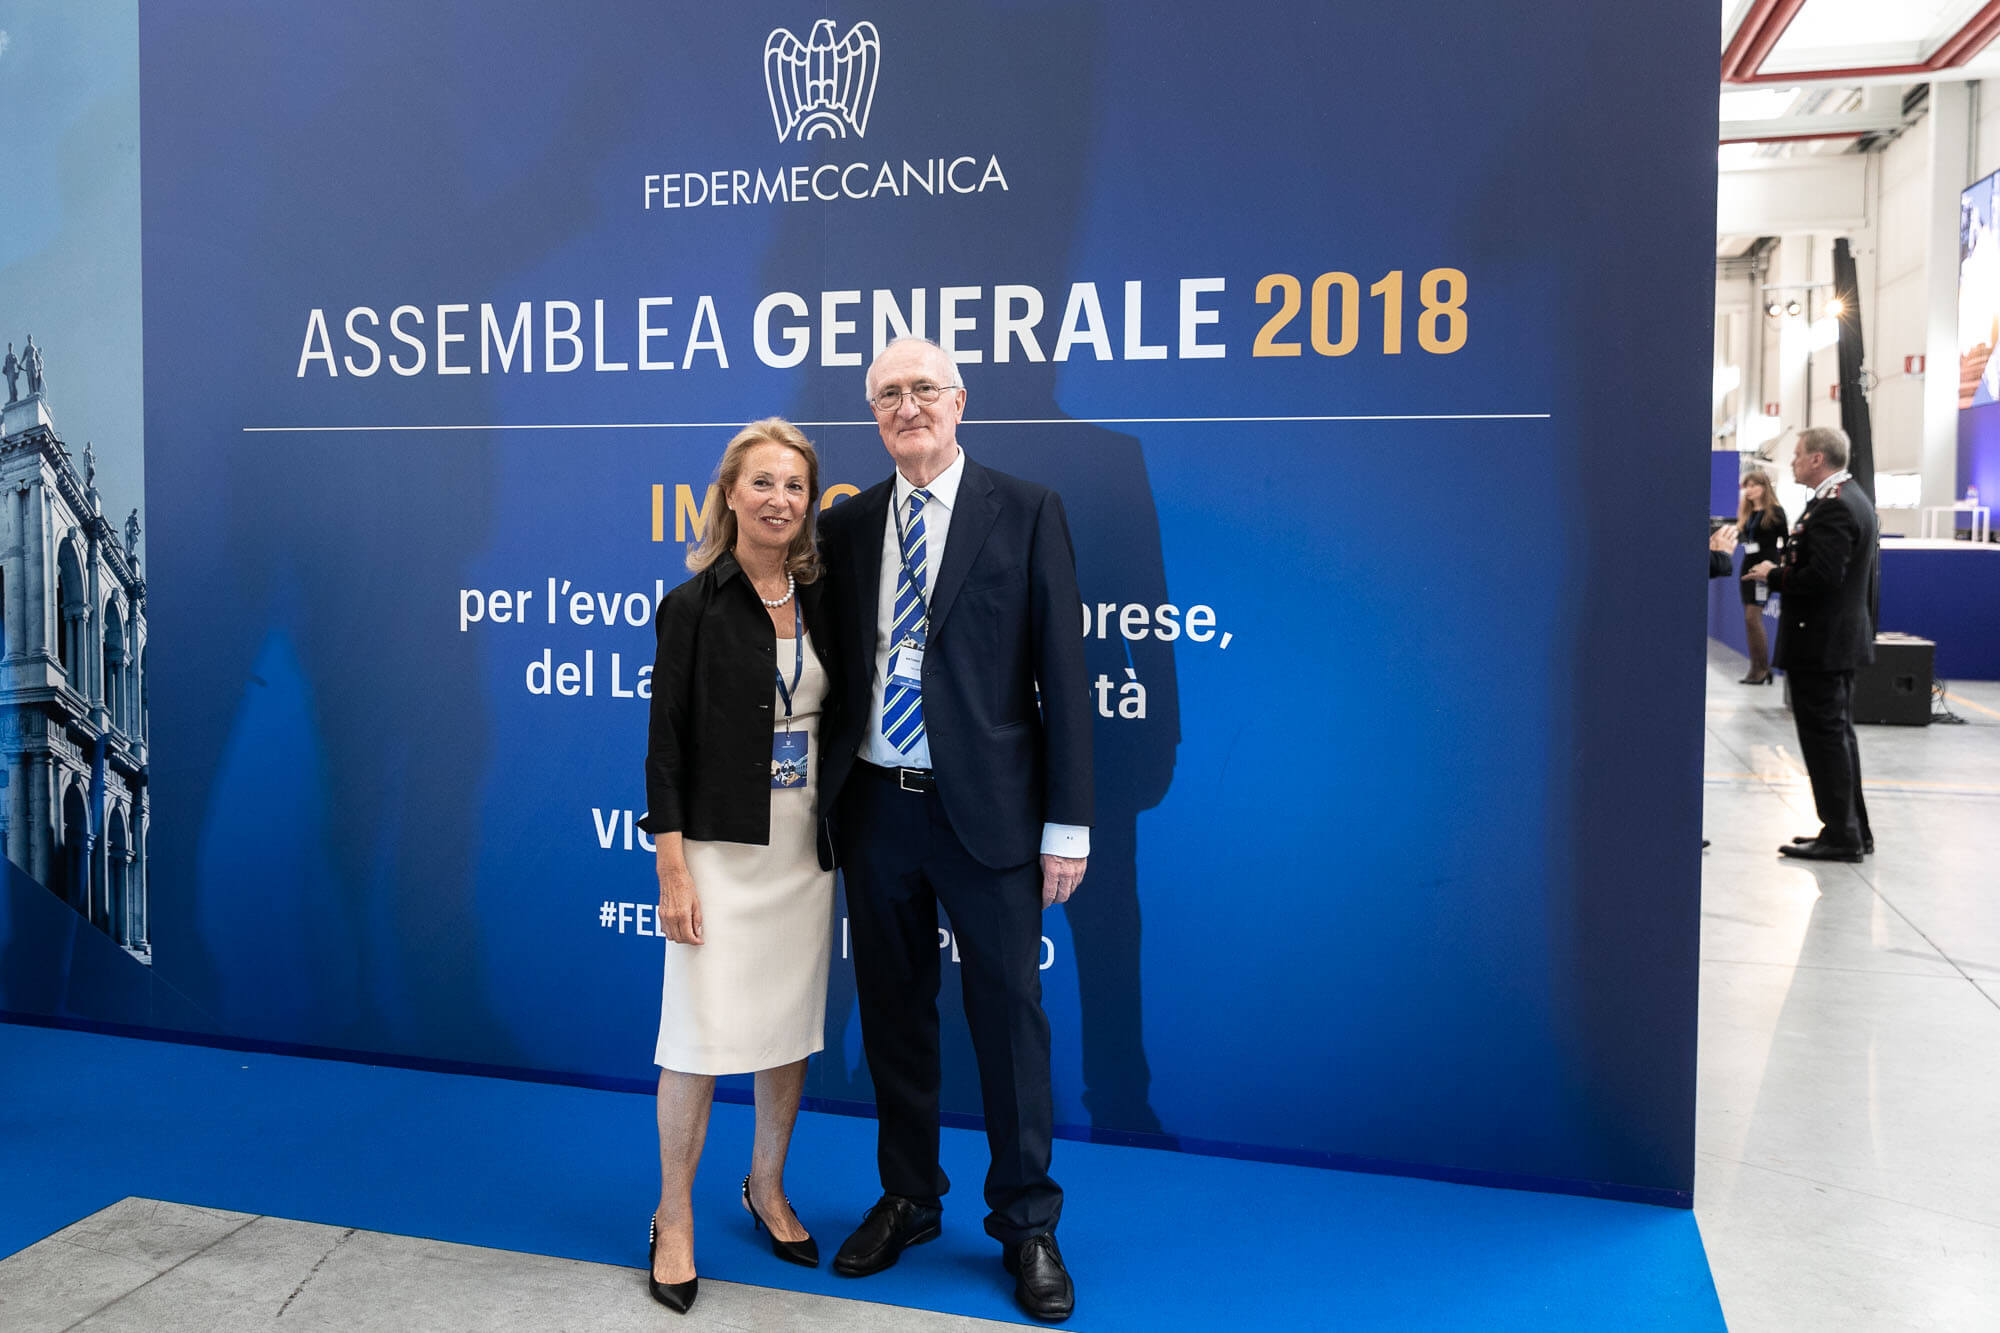 Assemblea generale 2018 Federmeccanica